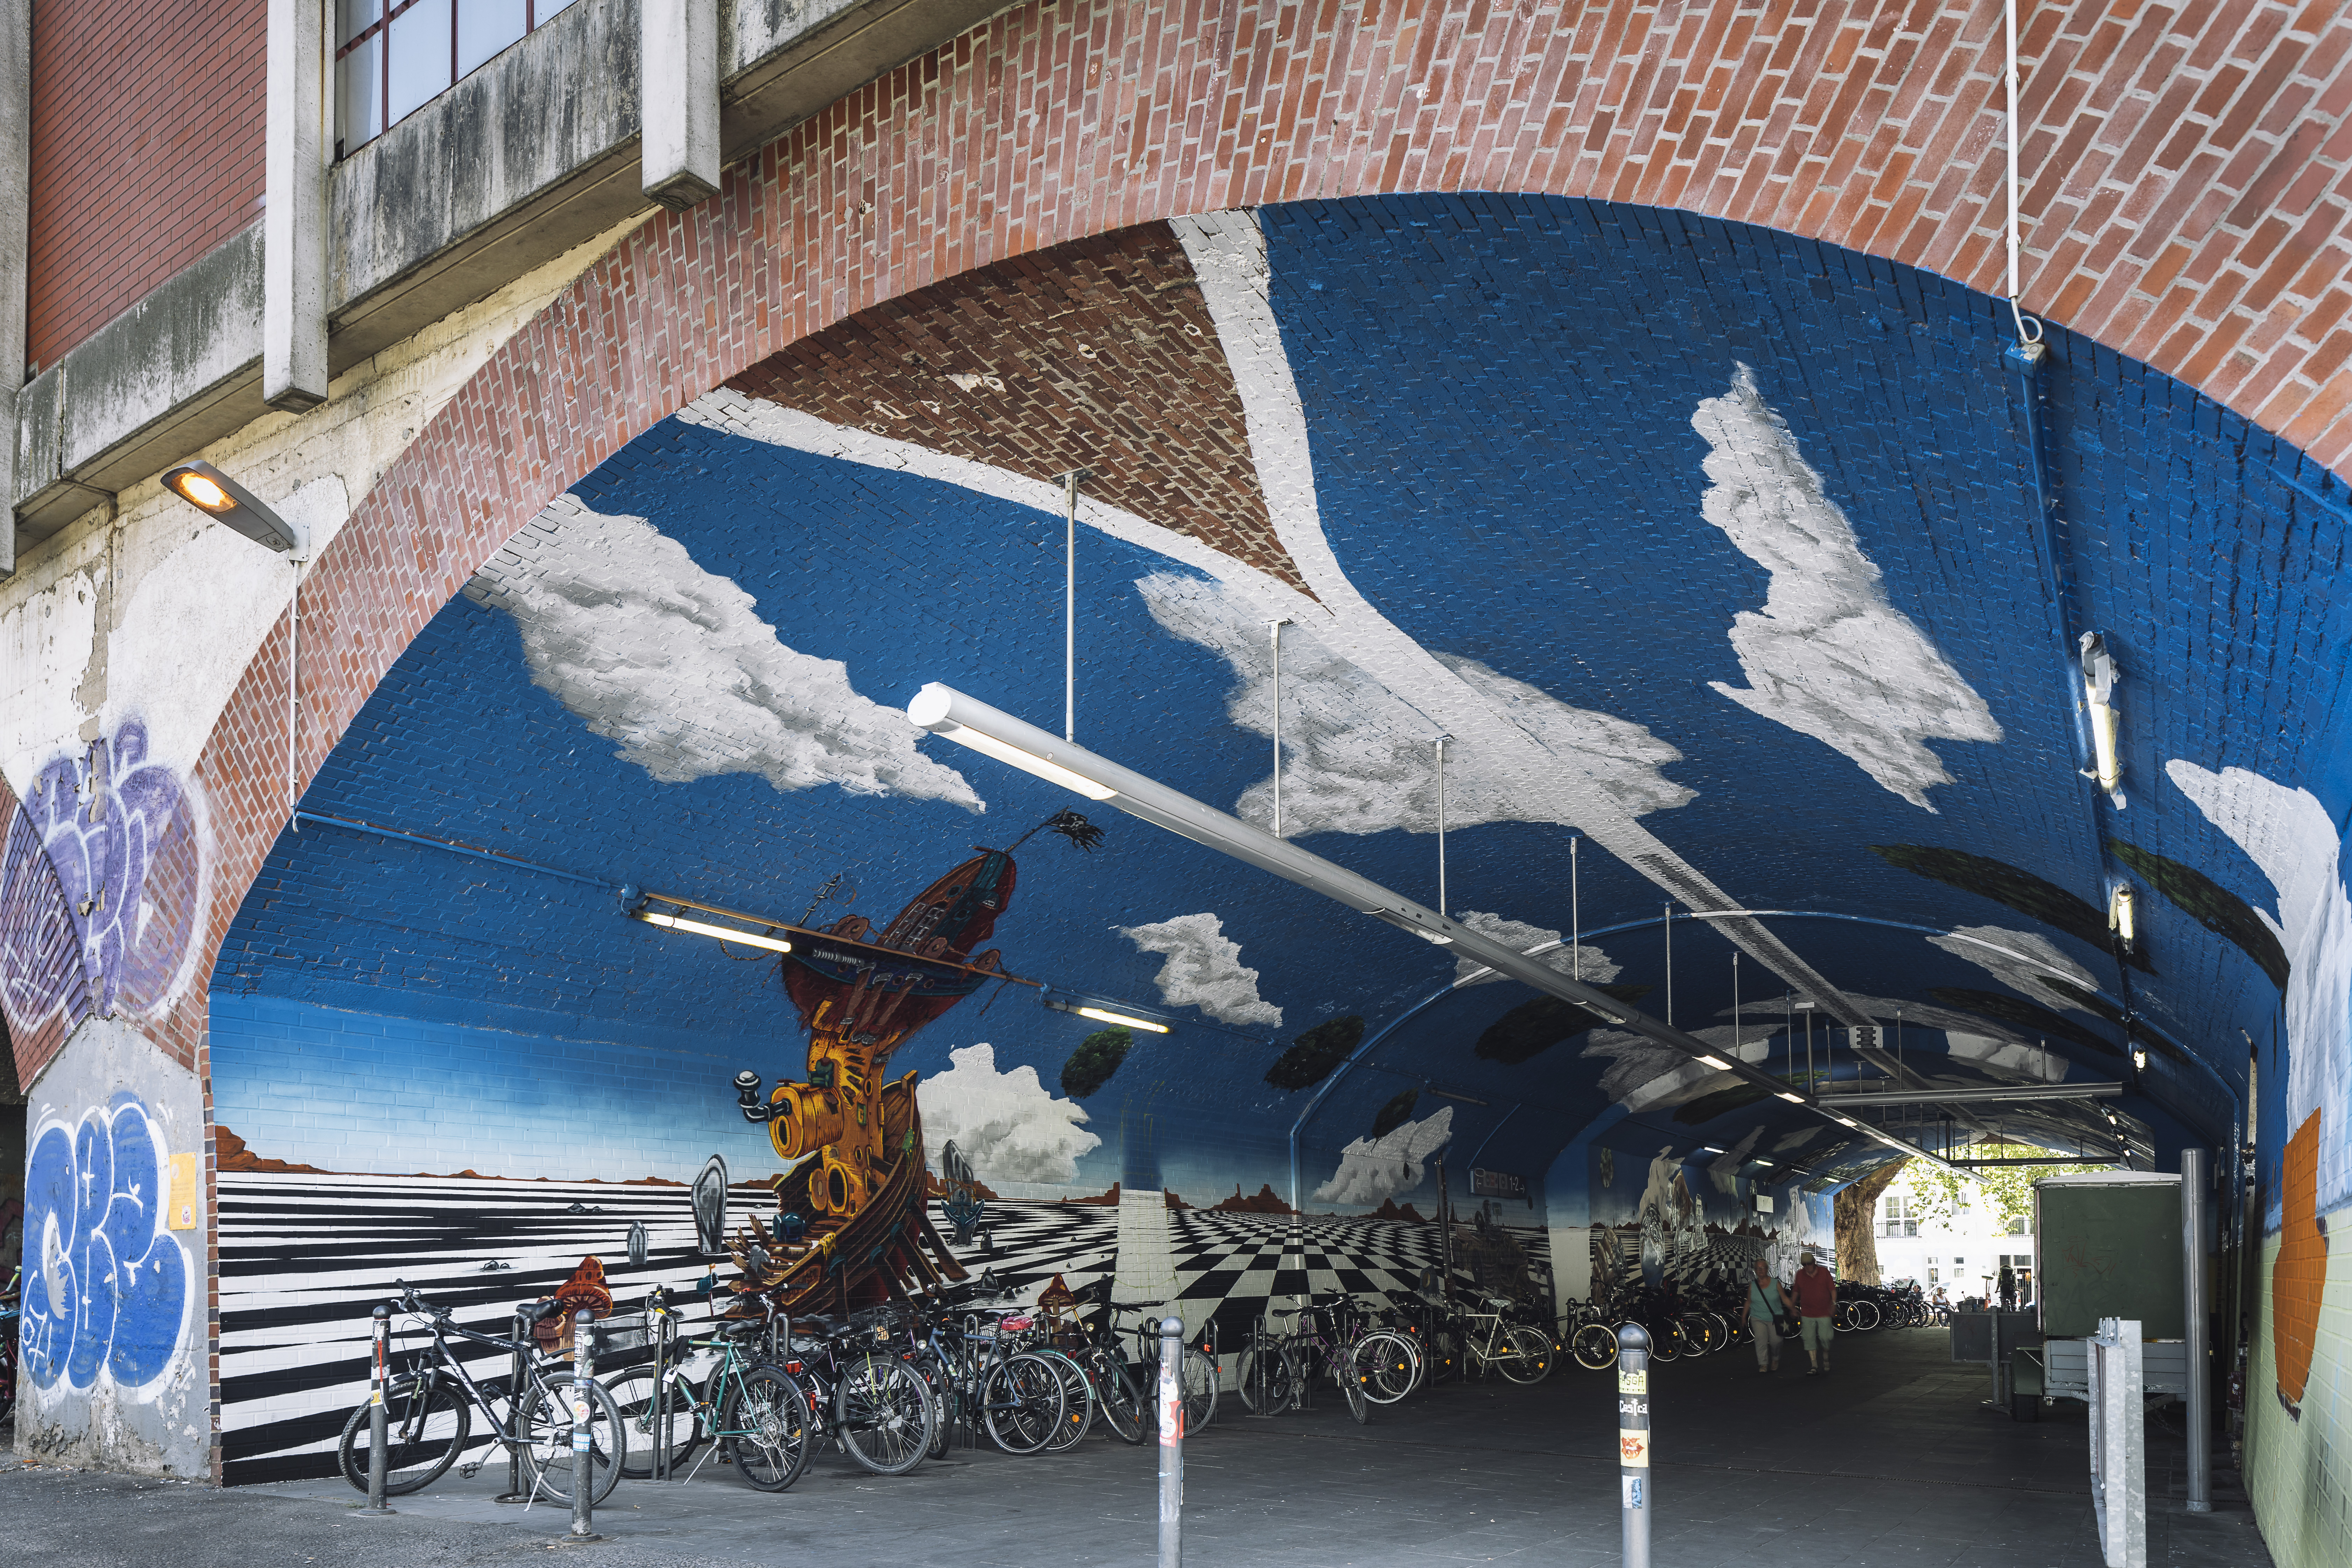 Ein Bild zeigt ein großangelegtes Graffiti im Gewölbegang einer Station. Darauf zu sehen sind Wolken auf einem strahlend blauen Himmel.